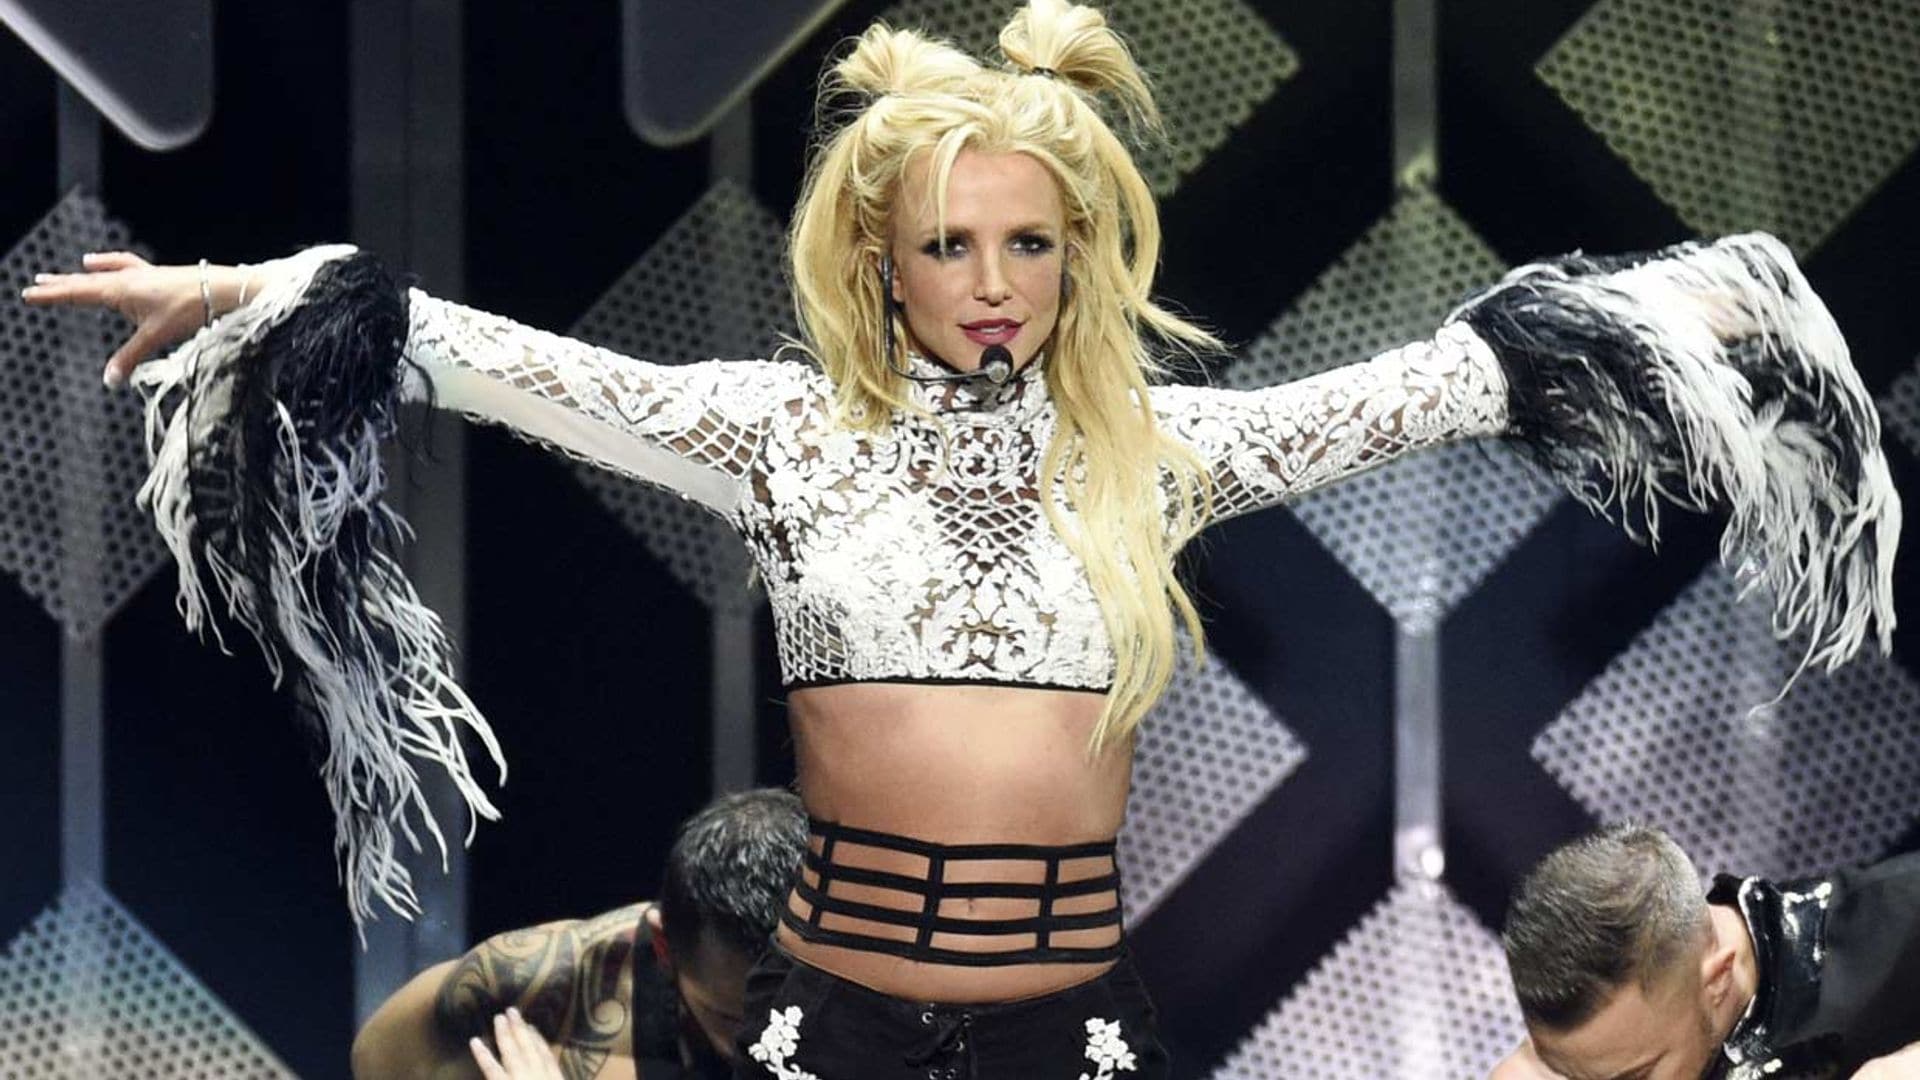 Britney Spears, hospitalizada por romperse un pie mientras bailaba